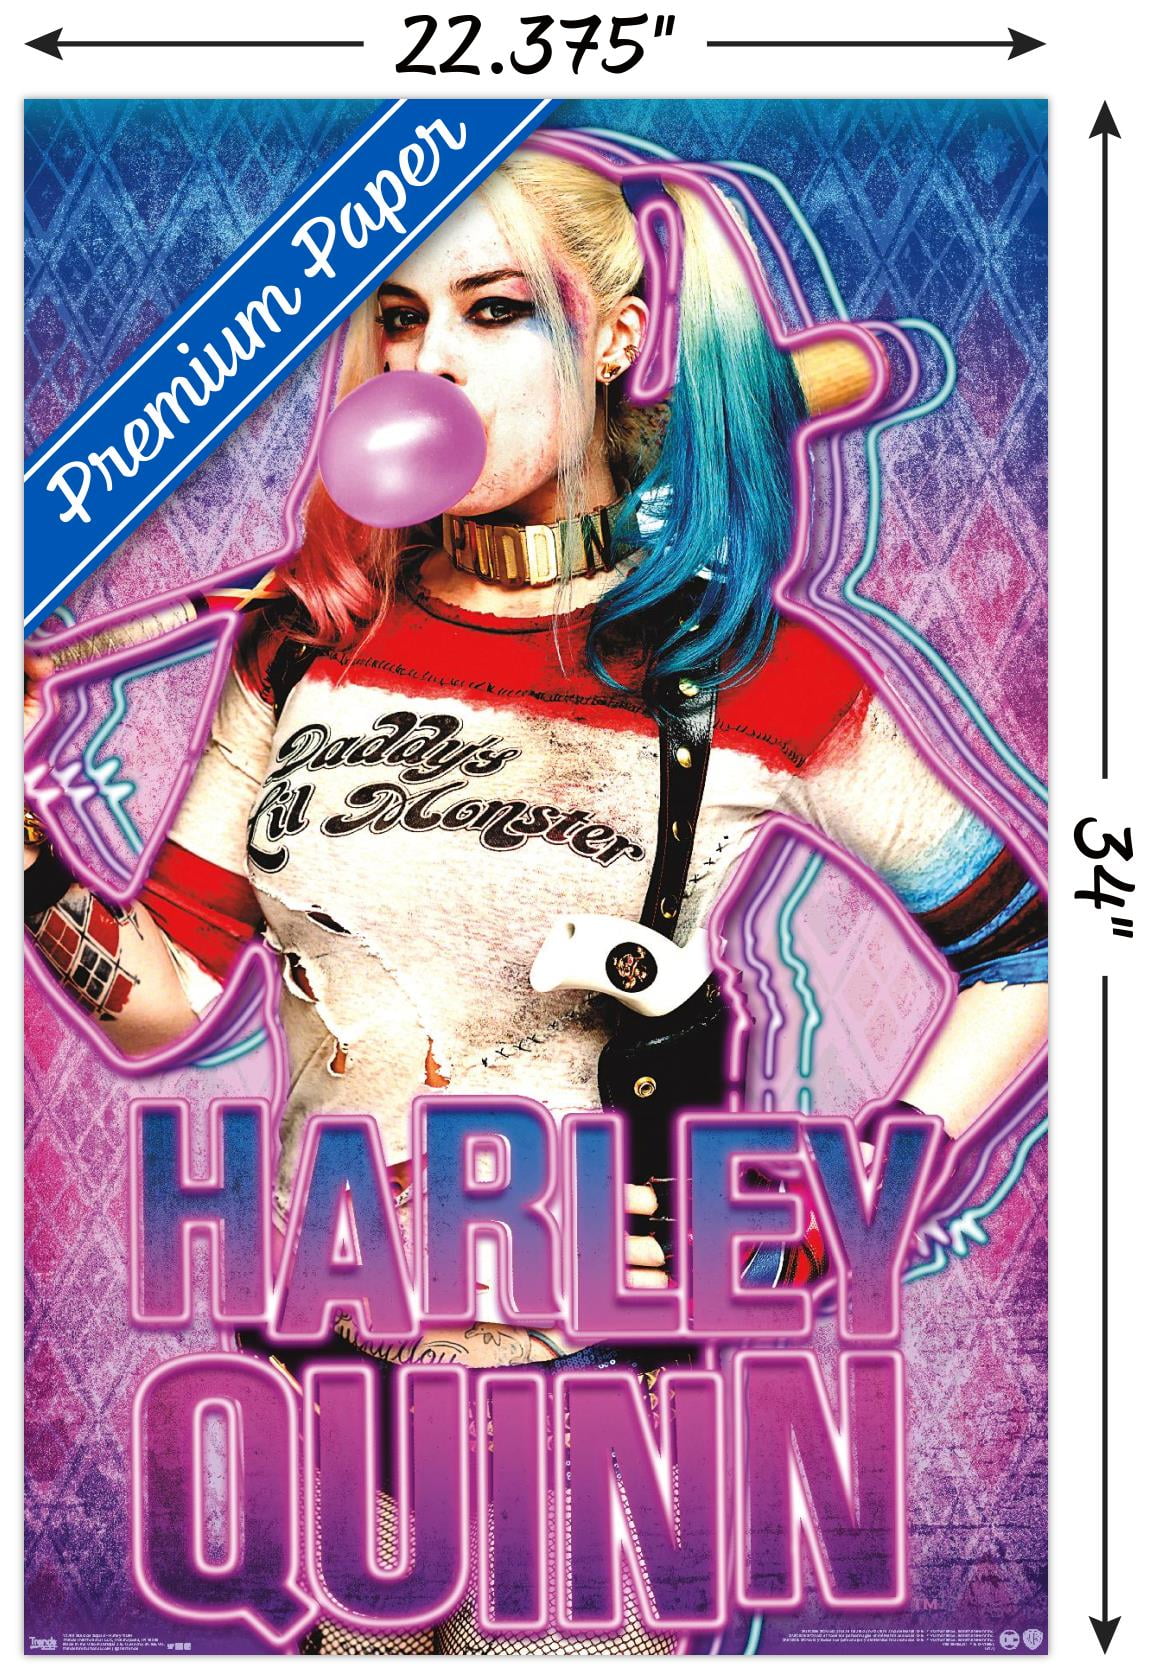 AMC Stubs IMAX Suicide Squad Harley Quinn 11x17 Cardstock Original